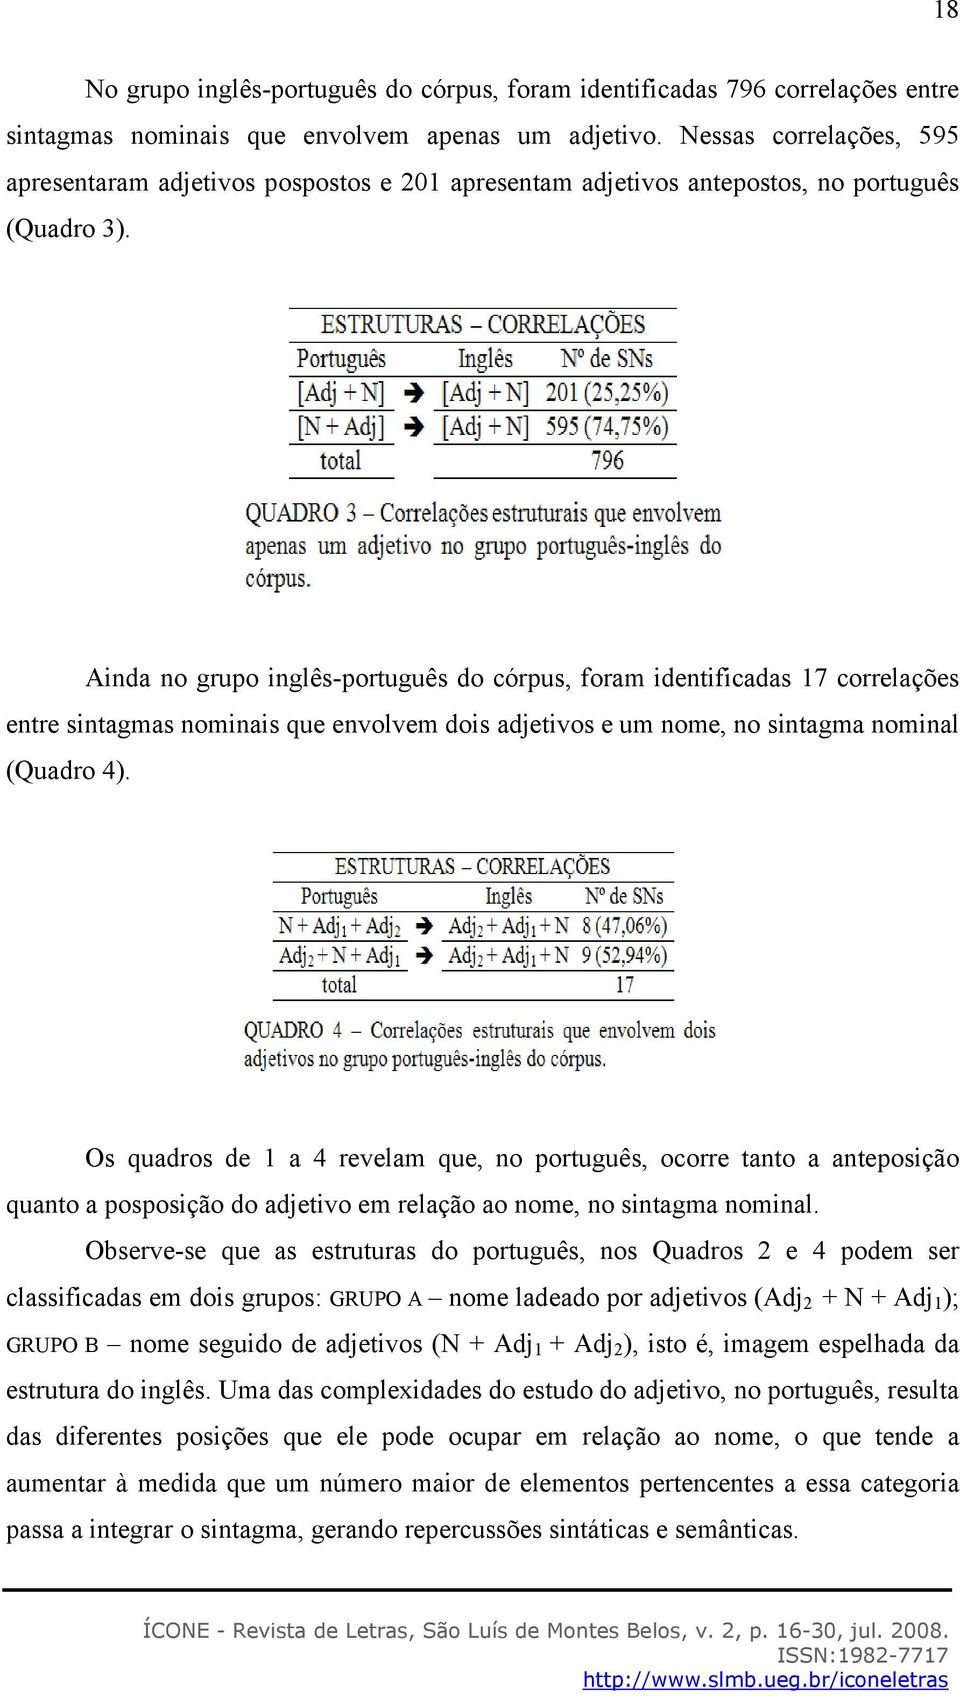 Ainda no grupo inglês-português do córpus, foram identificadas 17 correlações entre sintagmas nominais que envolvem dois adjetivos e um nome, no sintagma nominal (Quadro 4).